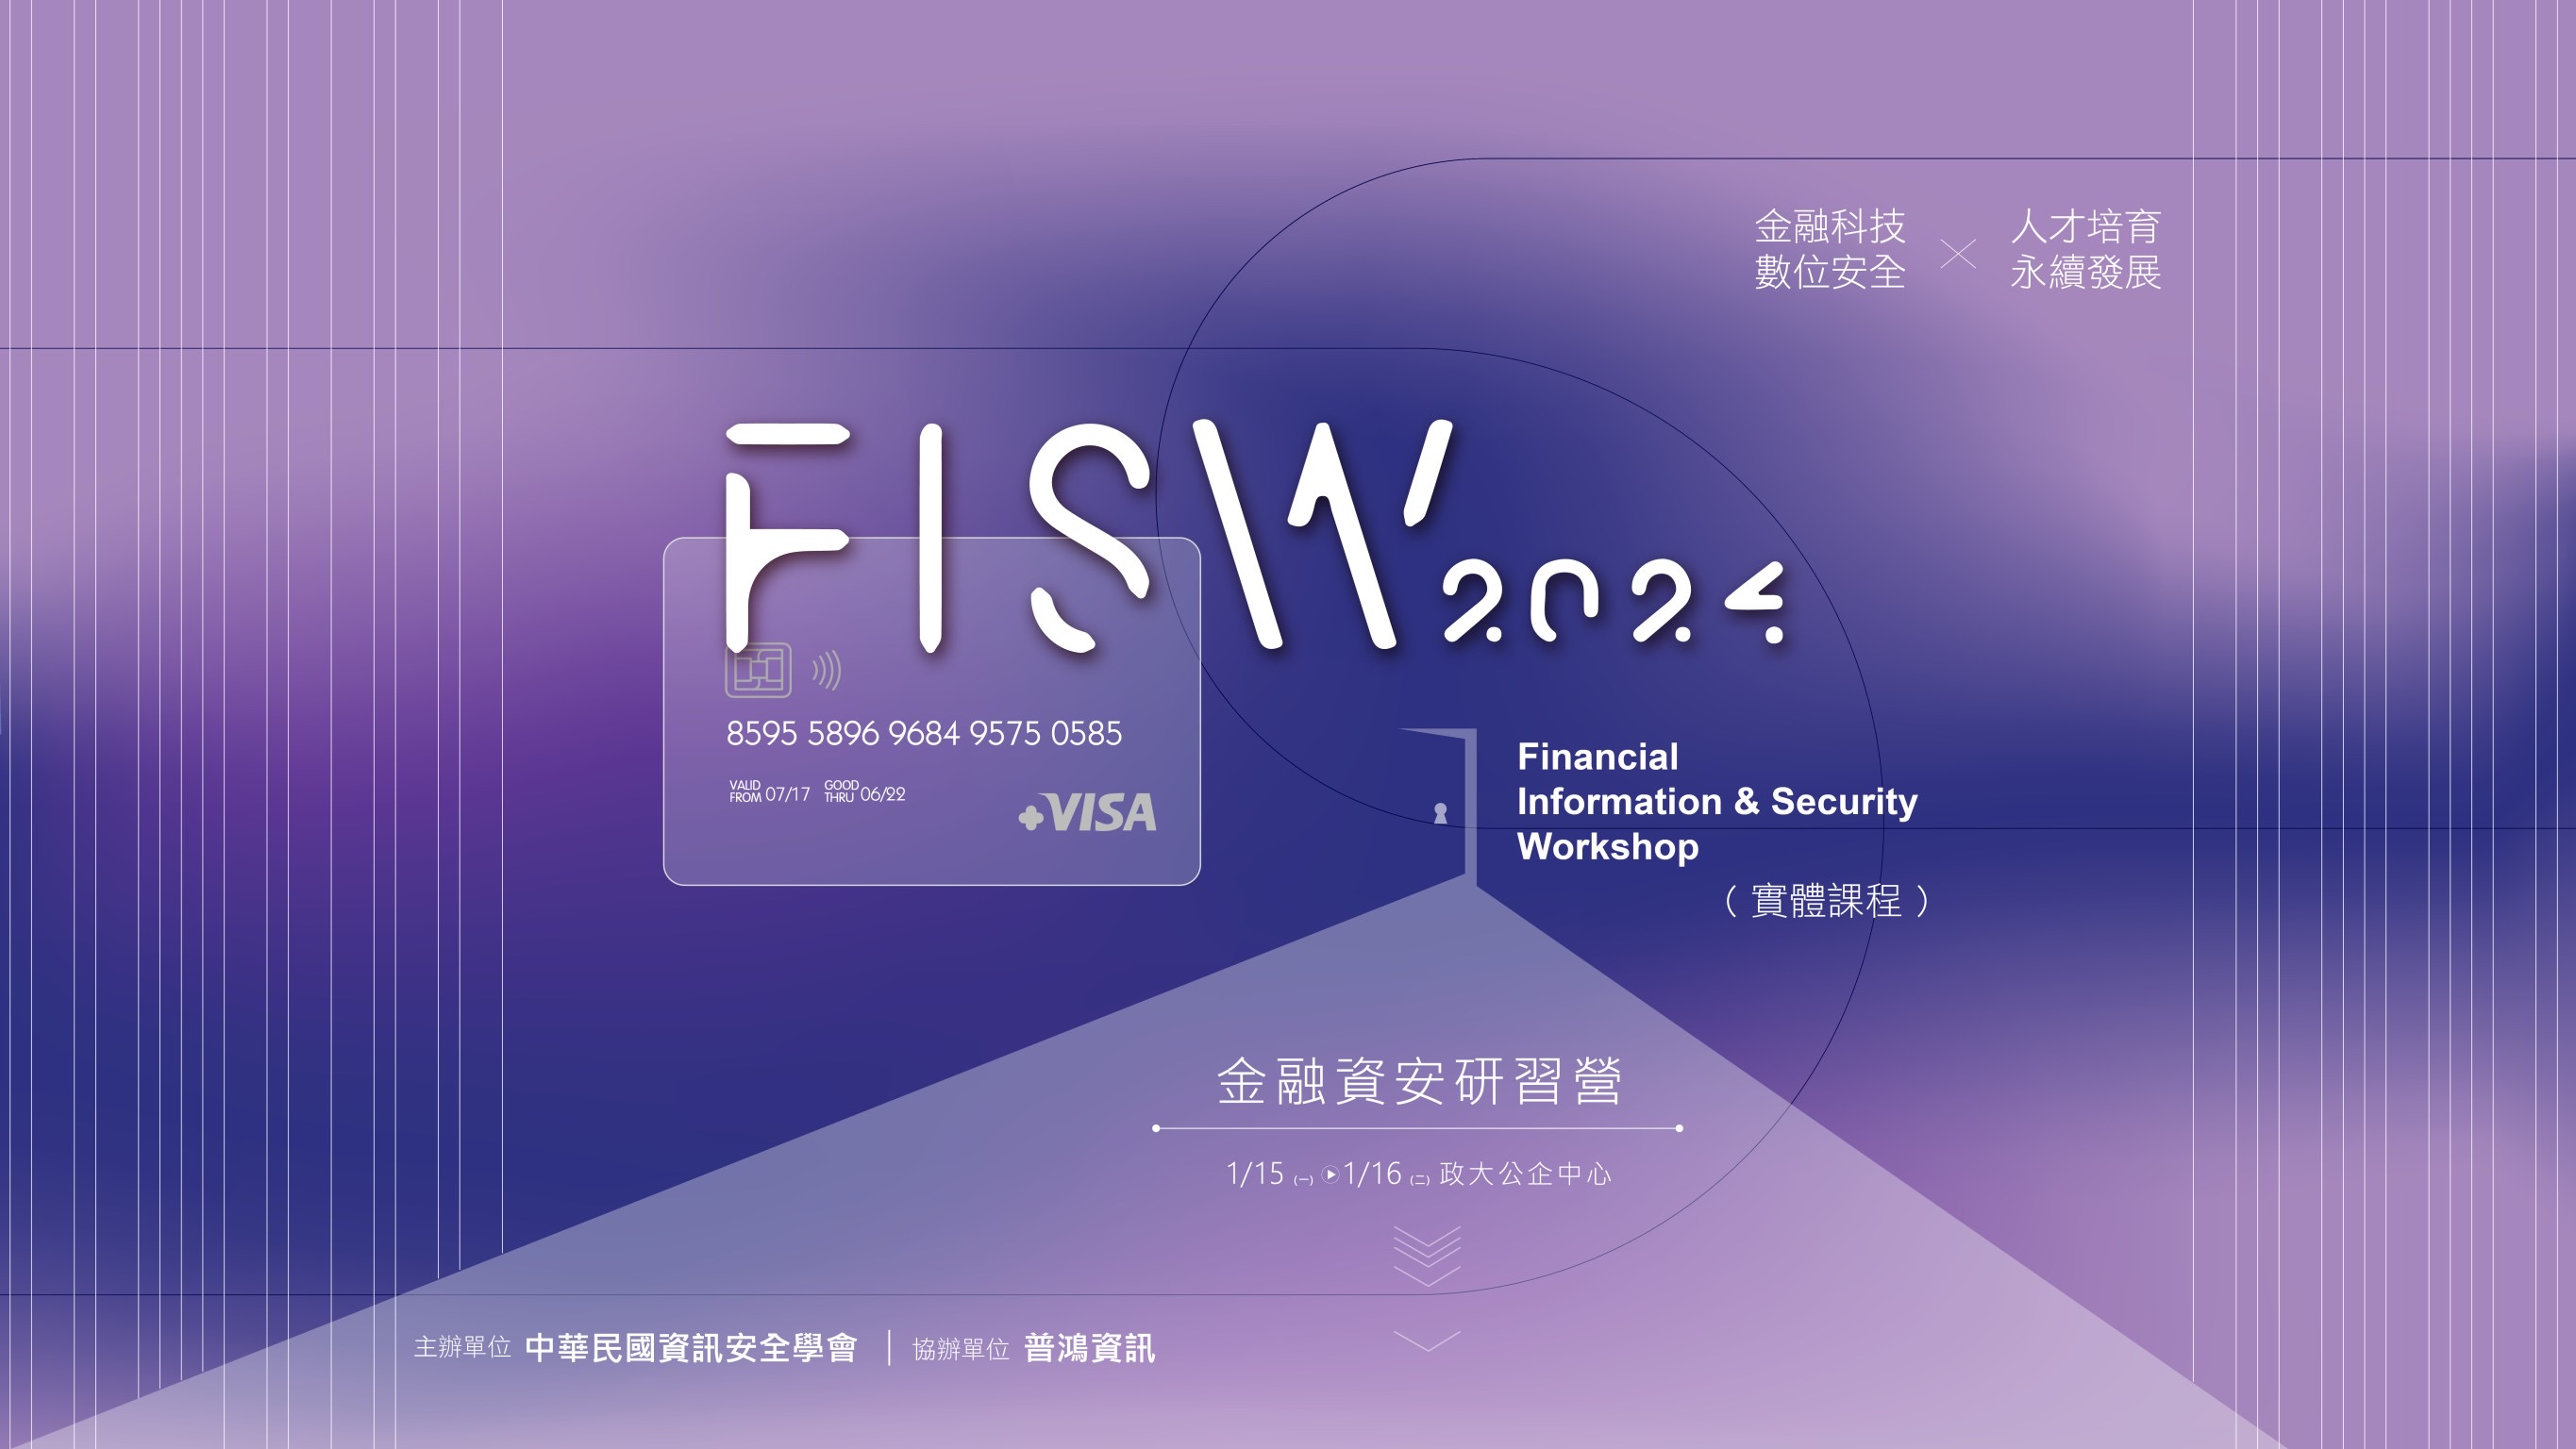 中華民國資訊安全協會辦理「金融資安研習營」資訊